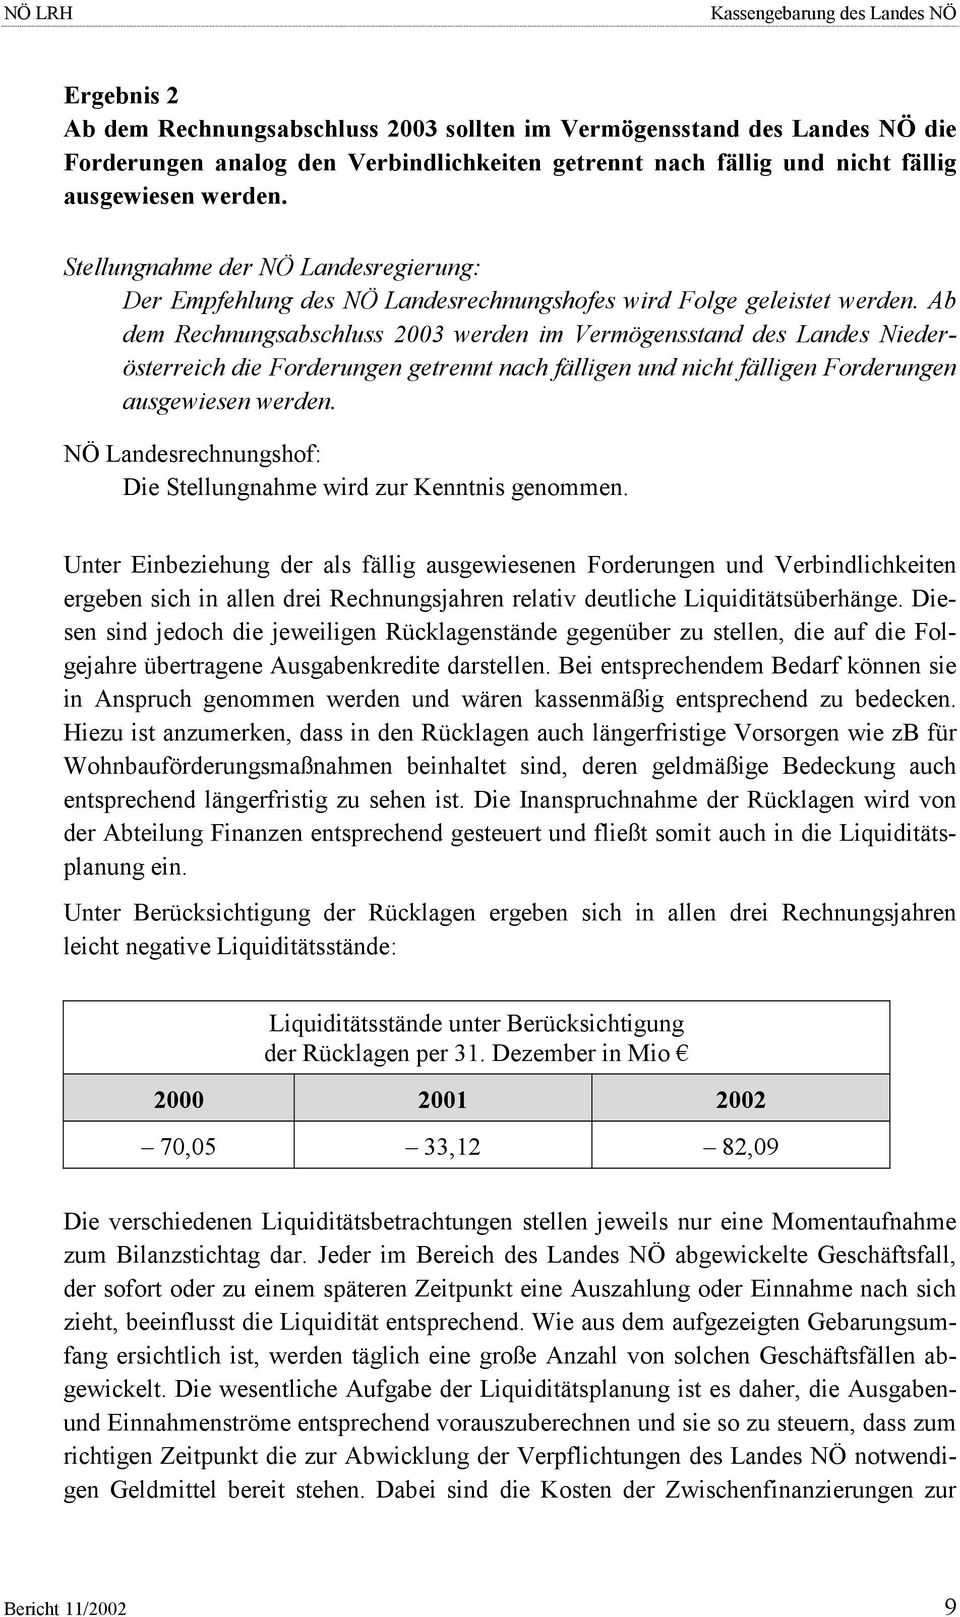 Ab dem Rechnungsabschluss 2003 werden im Vermögensstand des Landes Niederösterreich die Forderungen getrennt nach fälligen und nicht fälligen Forderungen ausgewiesen werden.